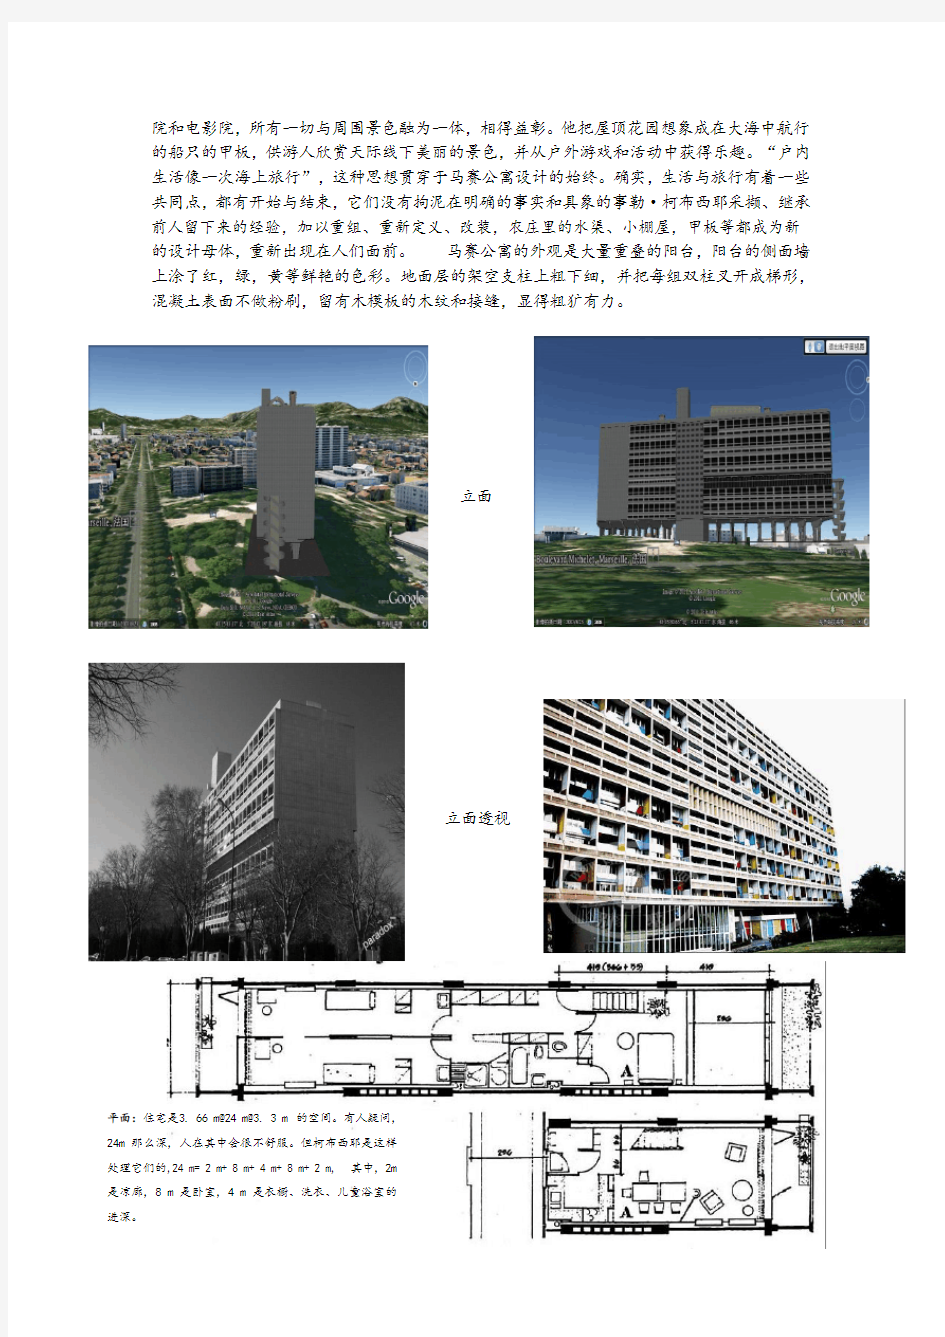 高层建筑案例分析——马赛公寓